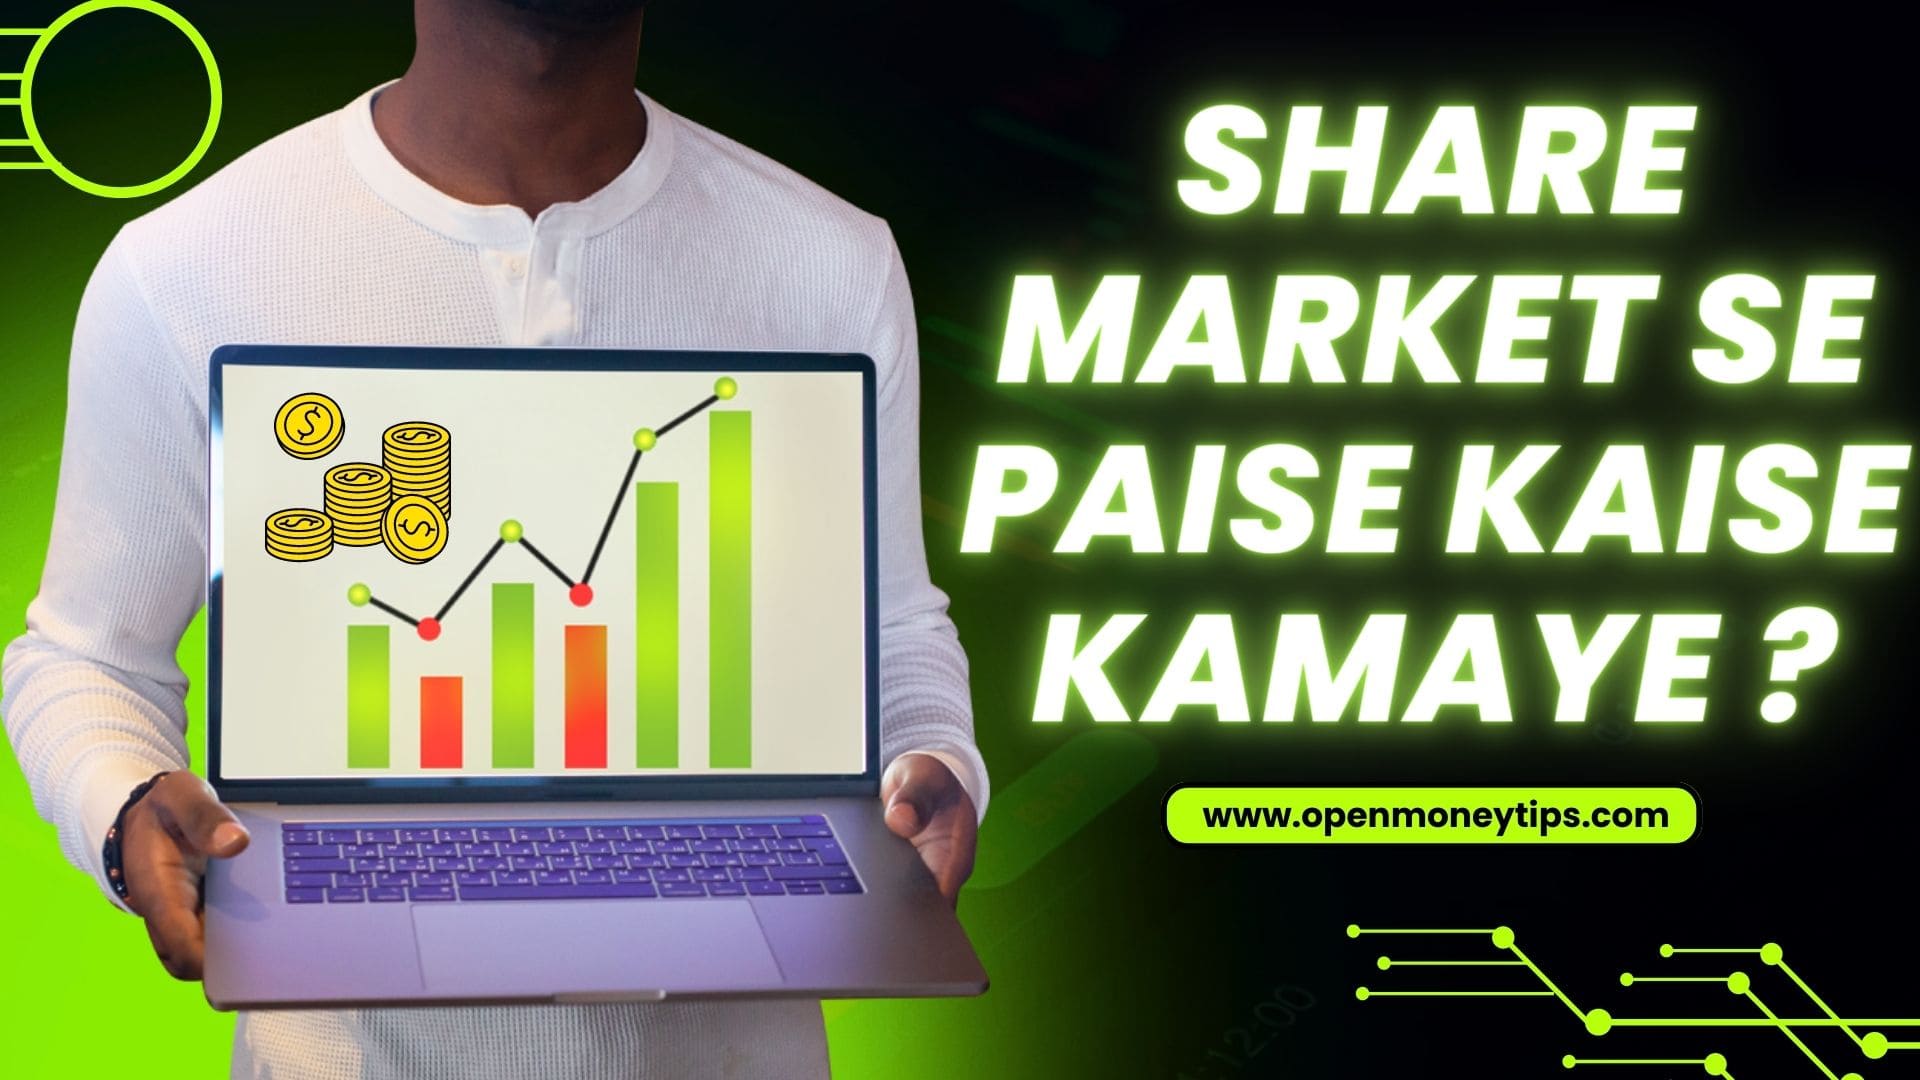 Share Market se paise kaise kamaye